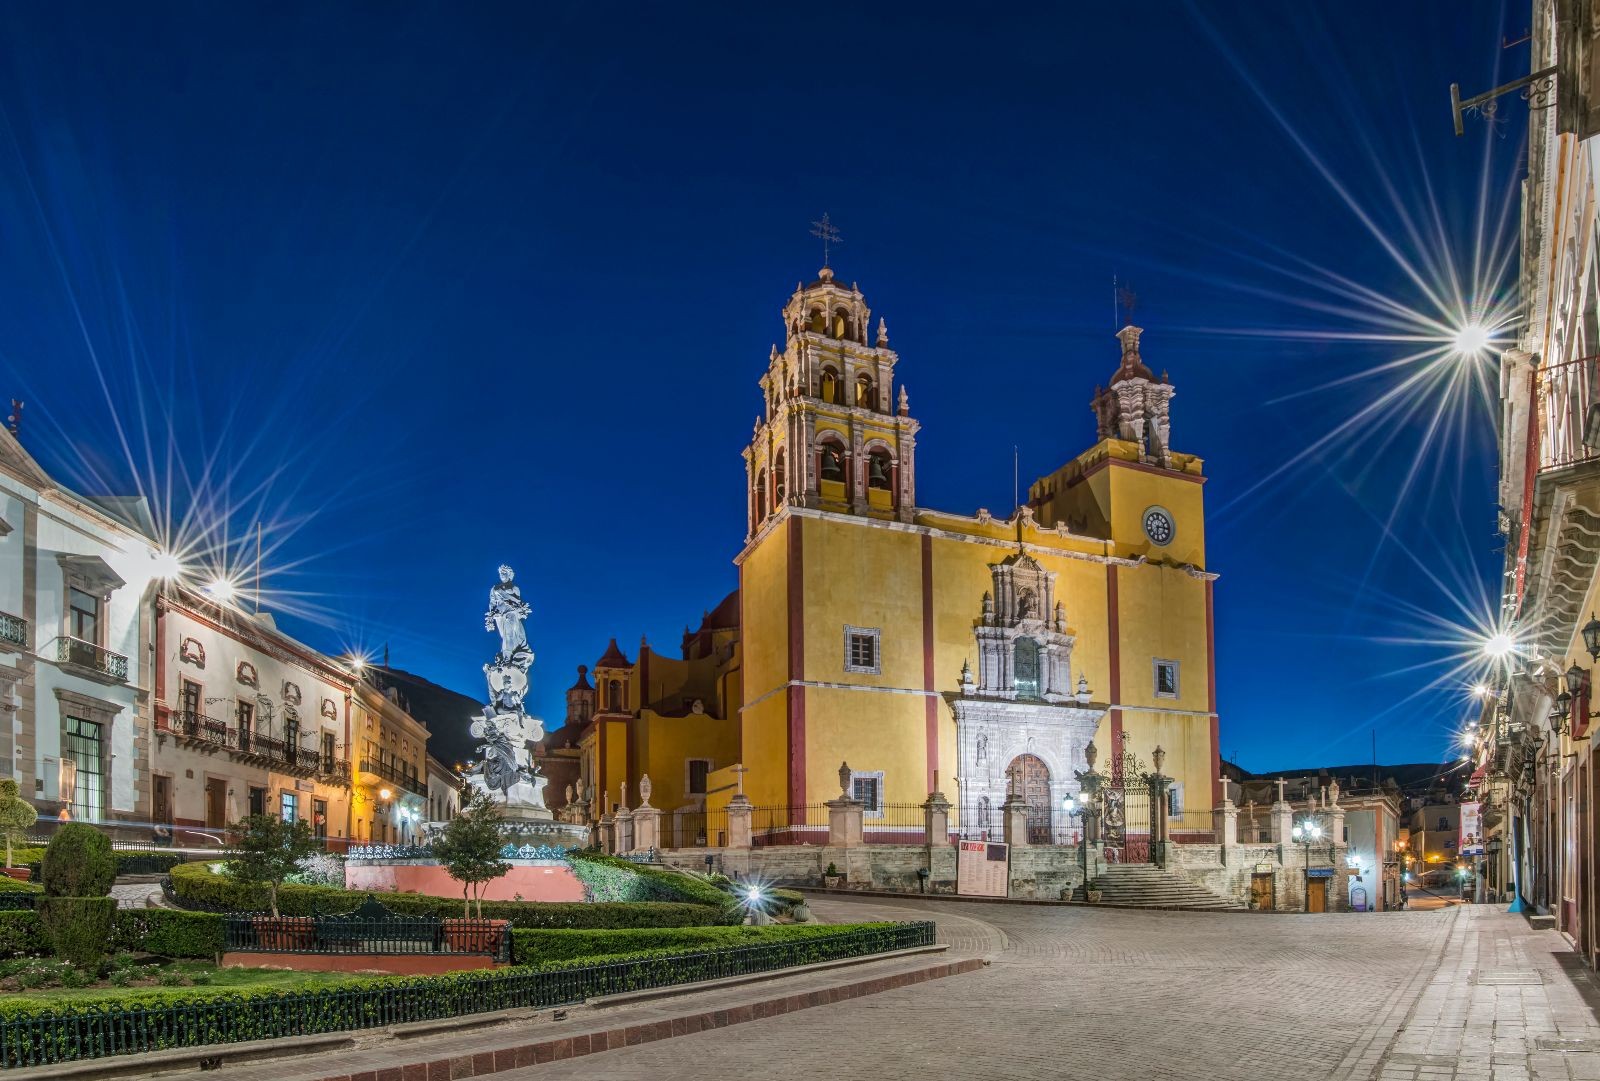 "Our Lady of Guanajuato church in Plaza de la Paz at dawn, Guanajuato, Guanajuato, Mexico"